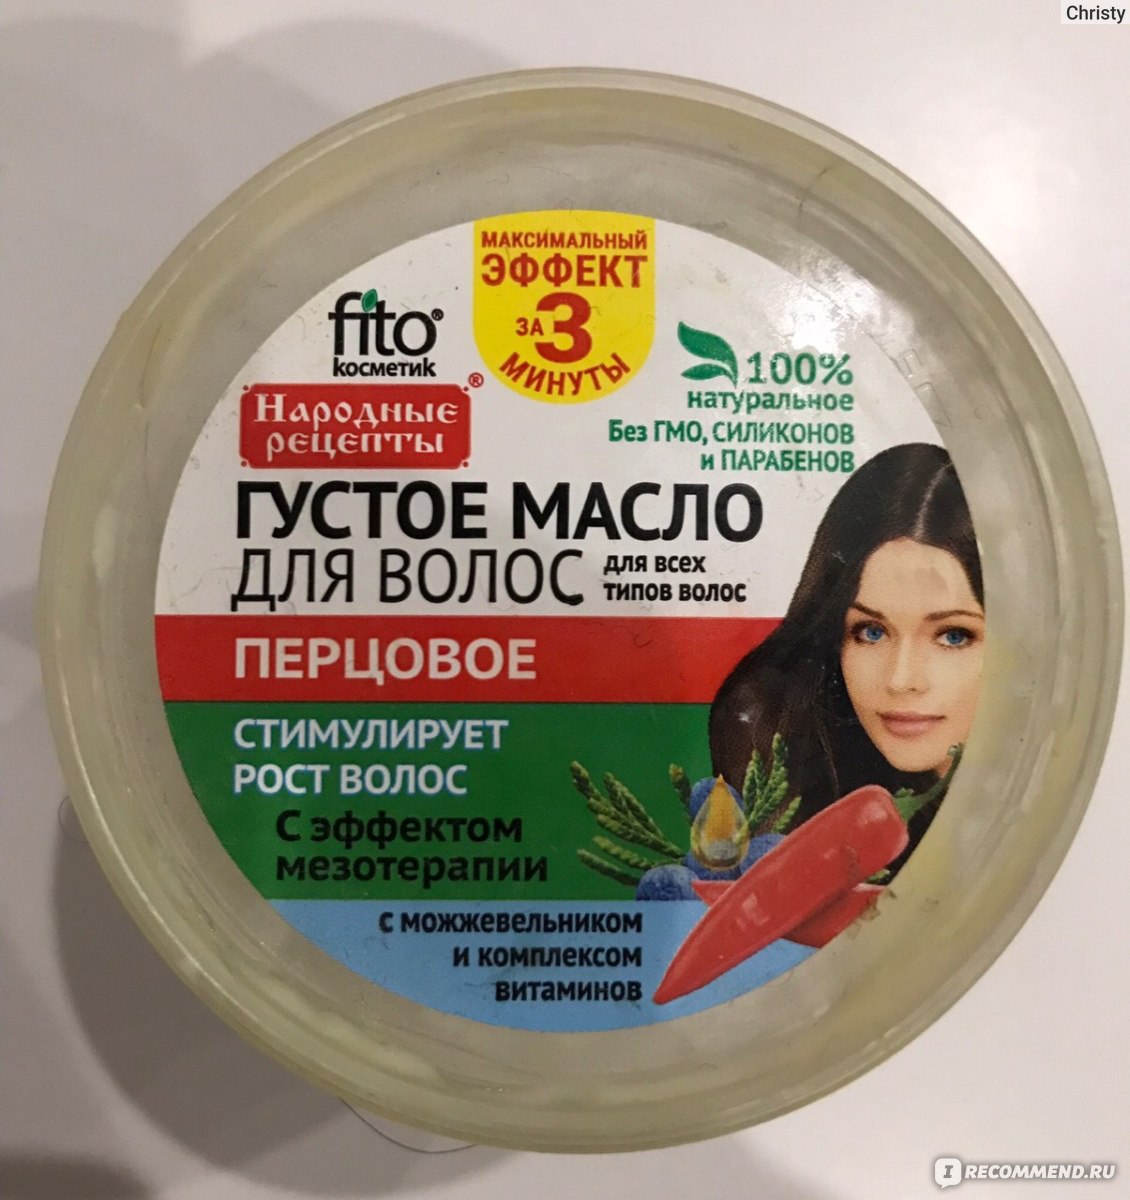 Густое масло для волос перцовое народные рецепты способ применения